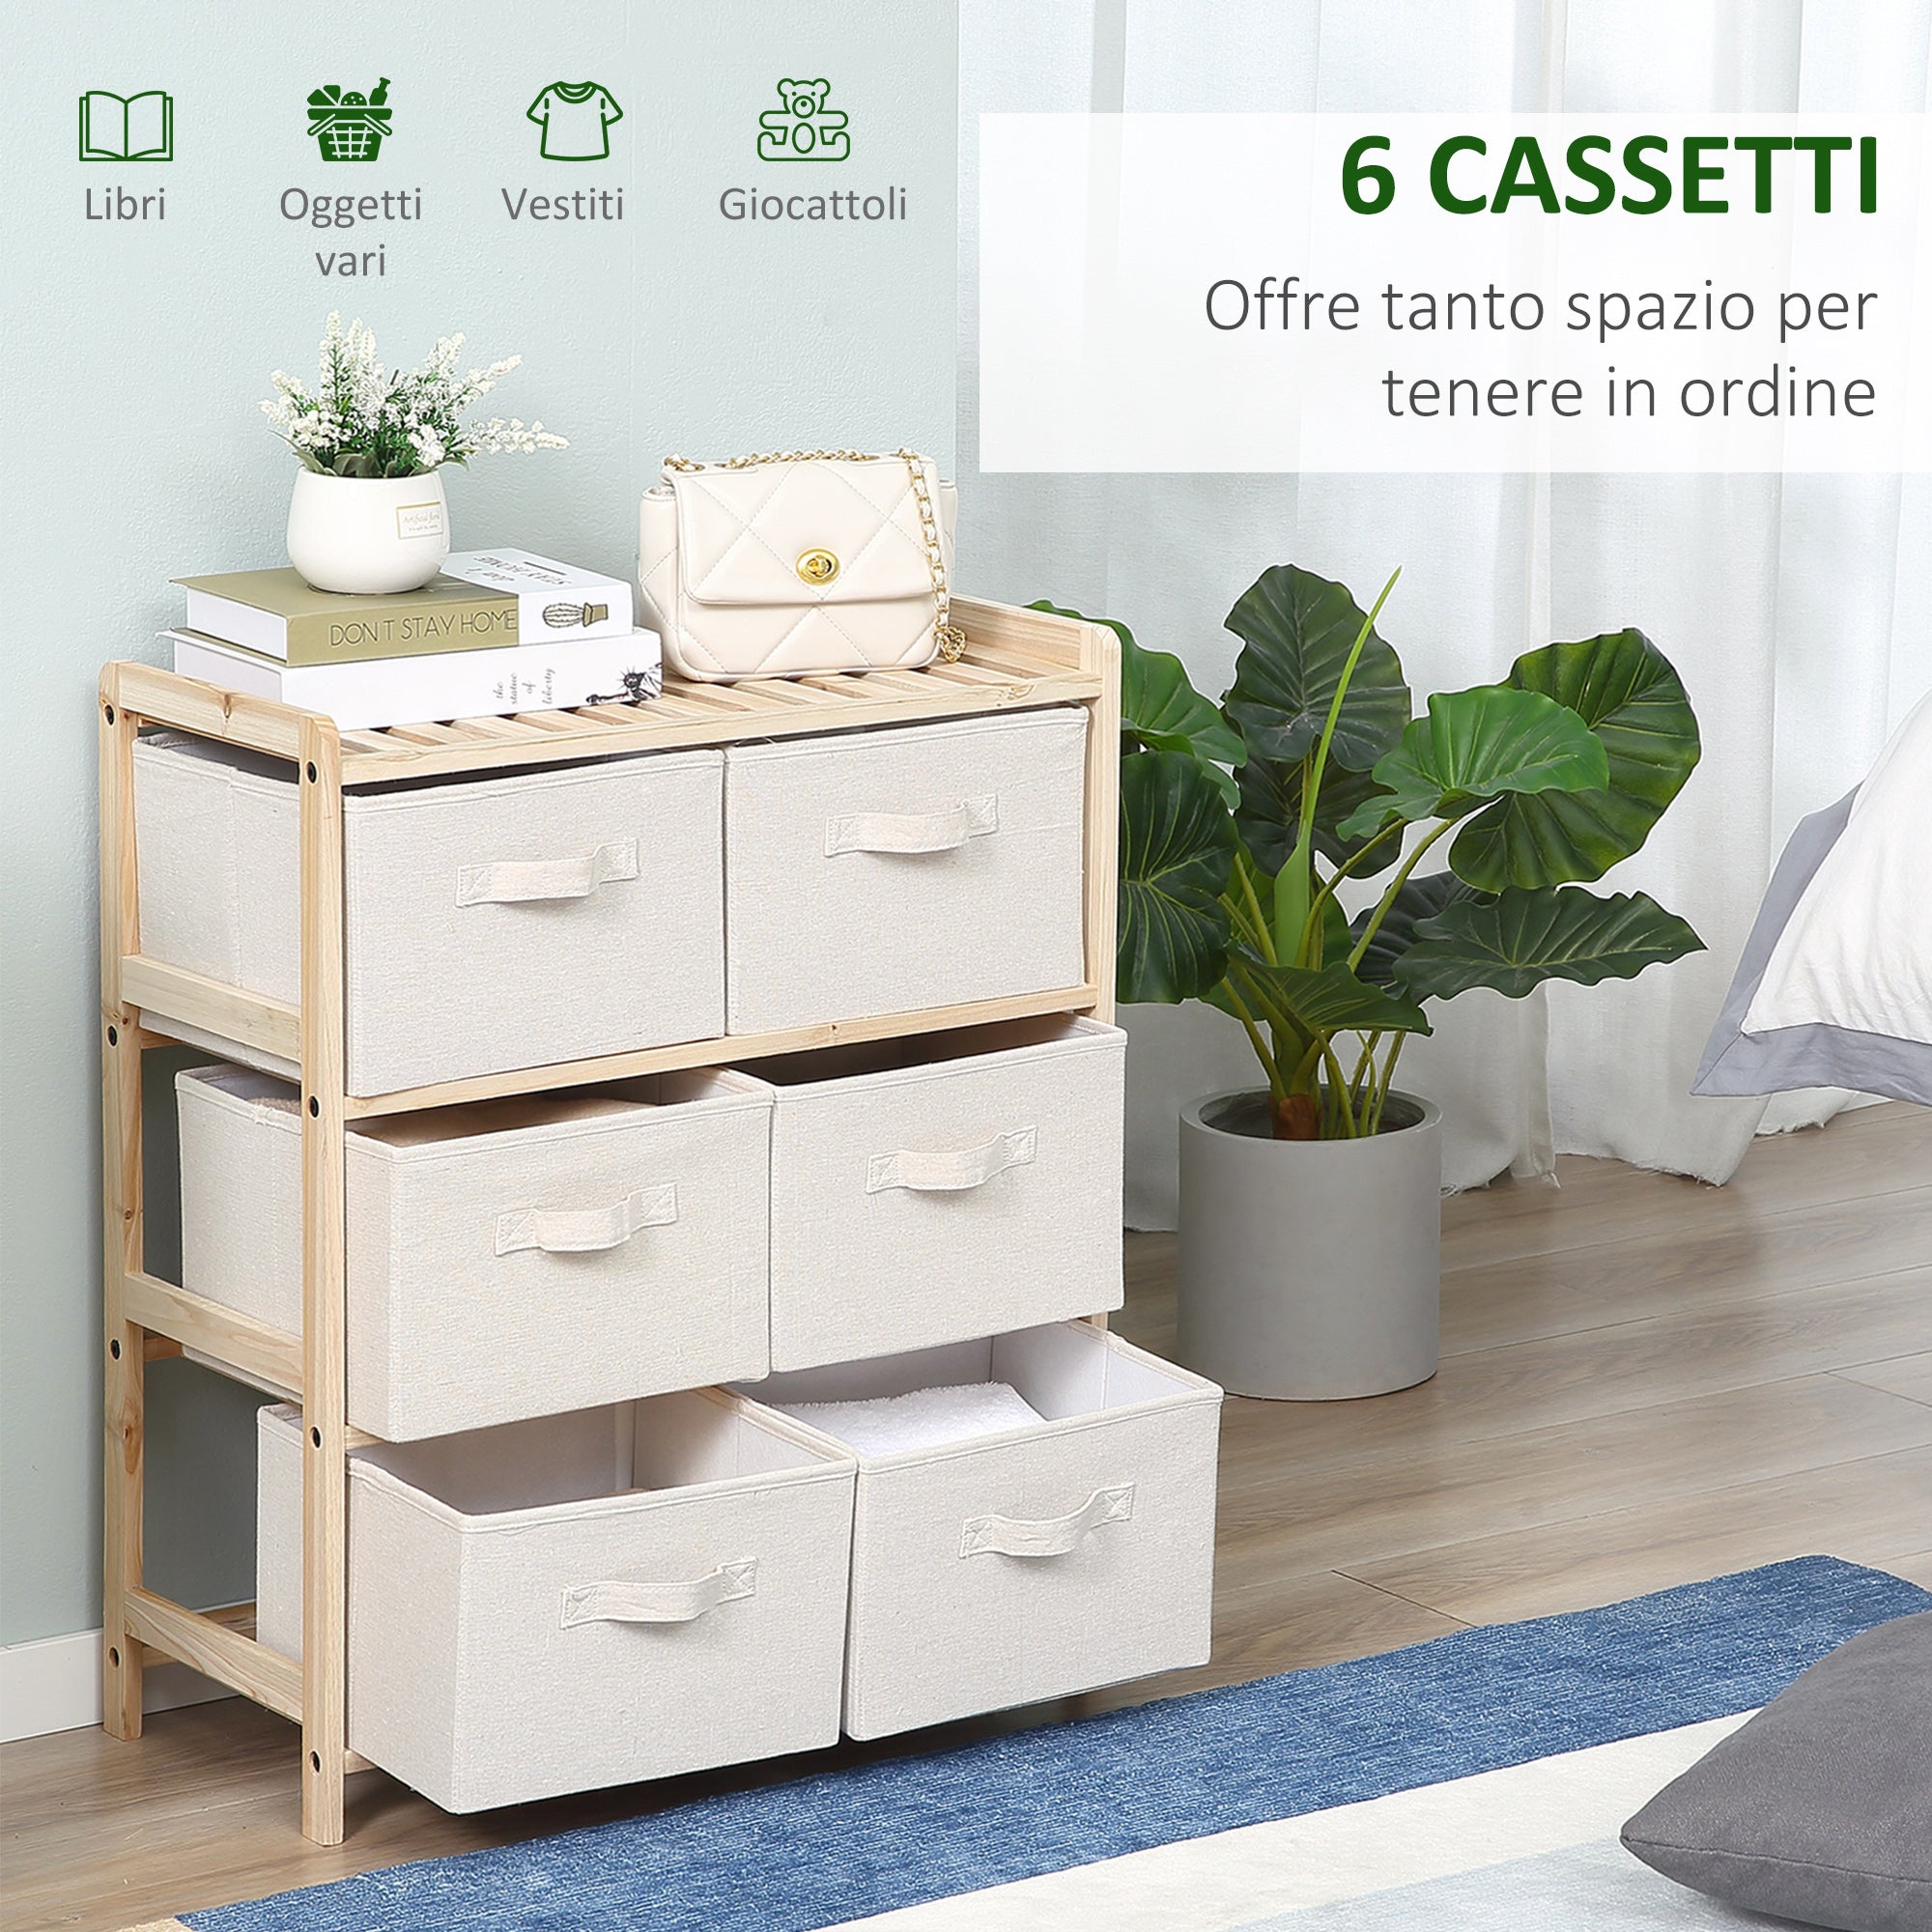 EASYCOMFORT Cassettiera con 6 Cassetti in Tessuto Pieghevoli ed Estraibili,  59x28x70cm - Legno/Beige